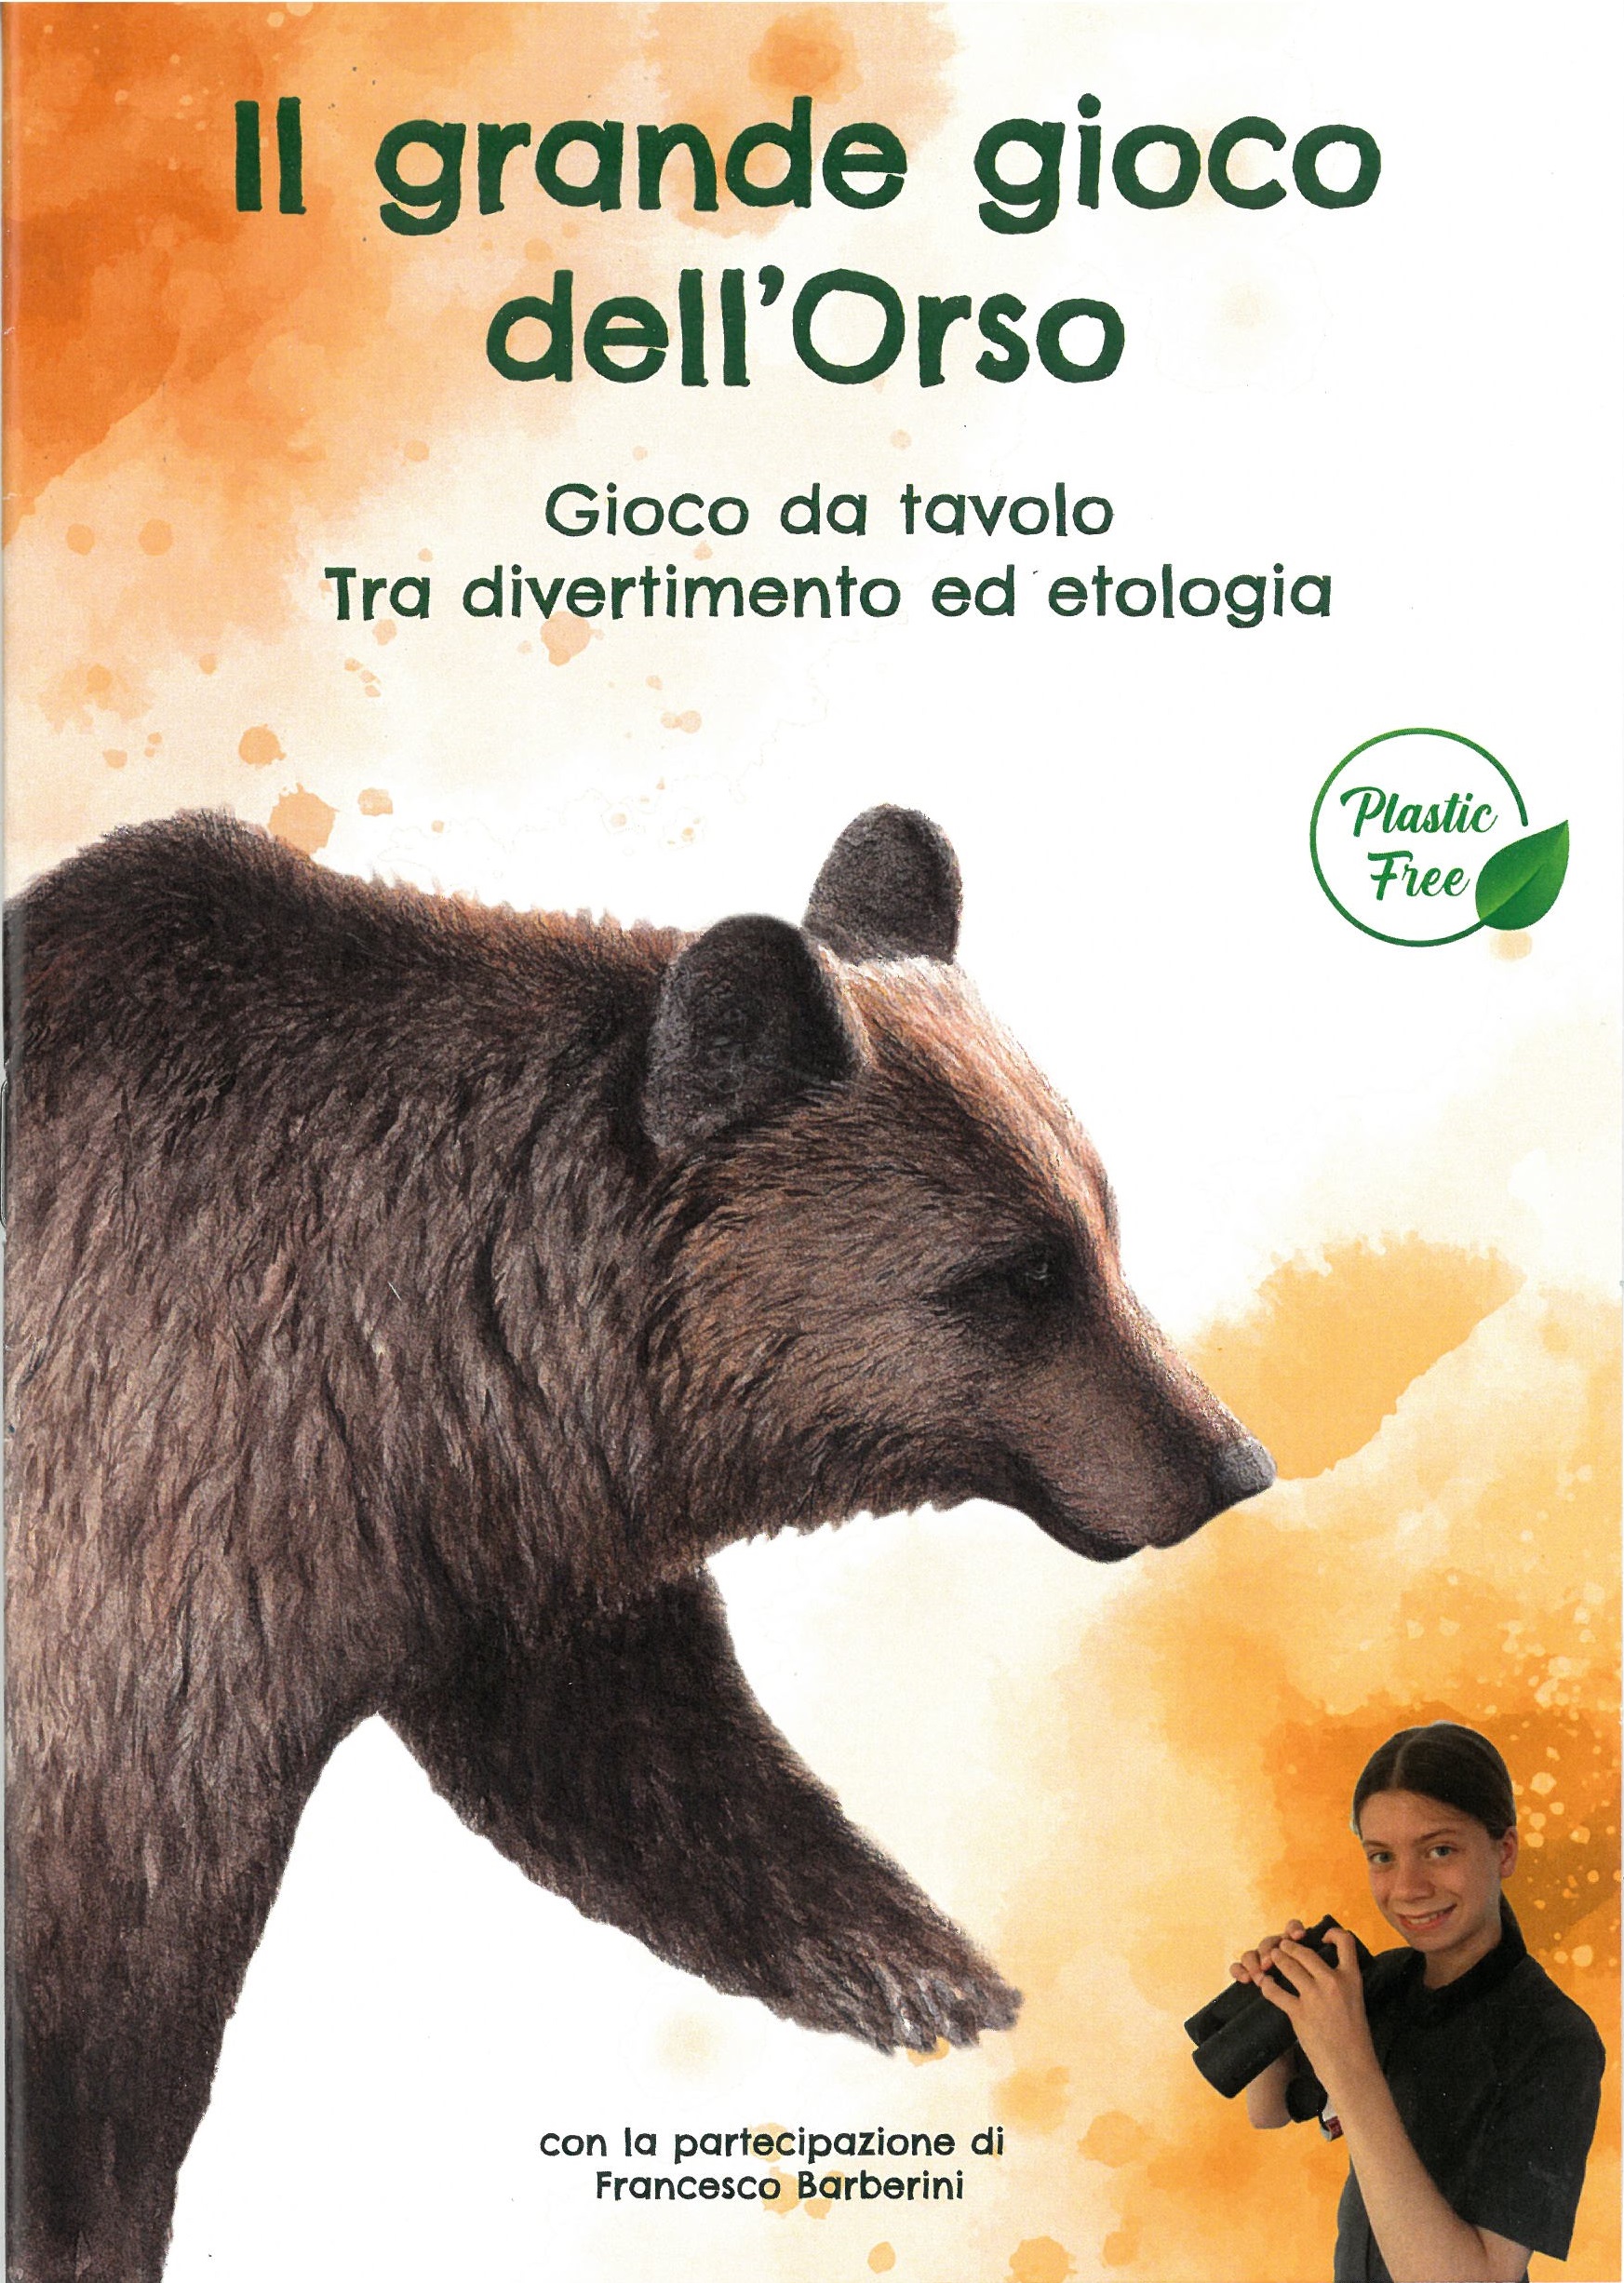 A caccia dell'orso. Il manuale della natura